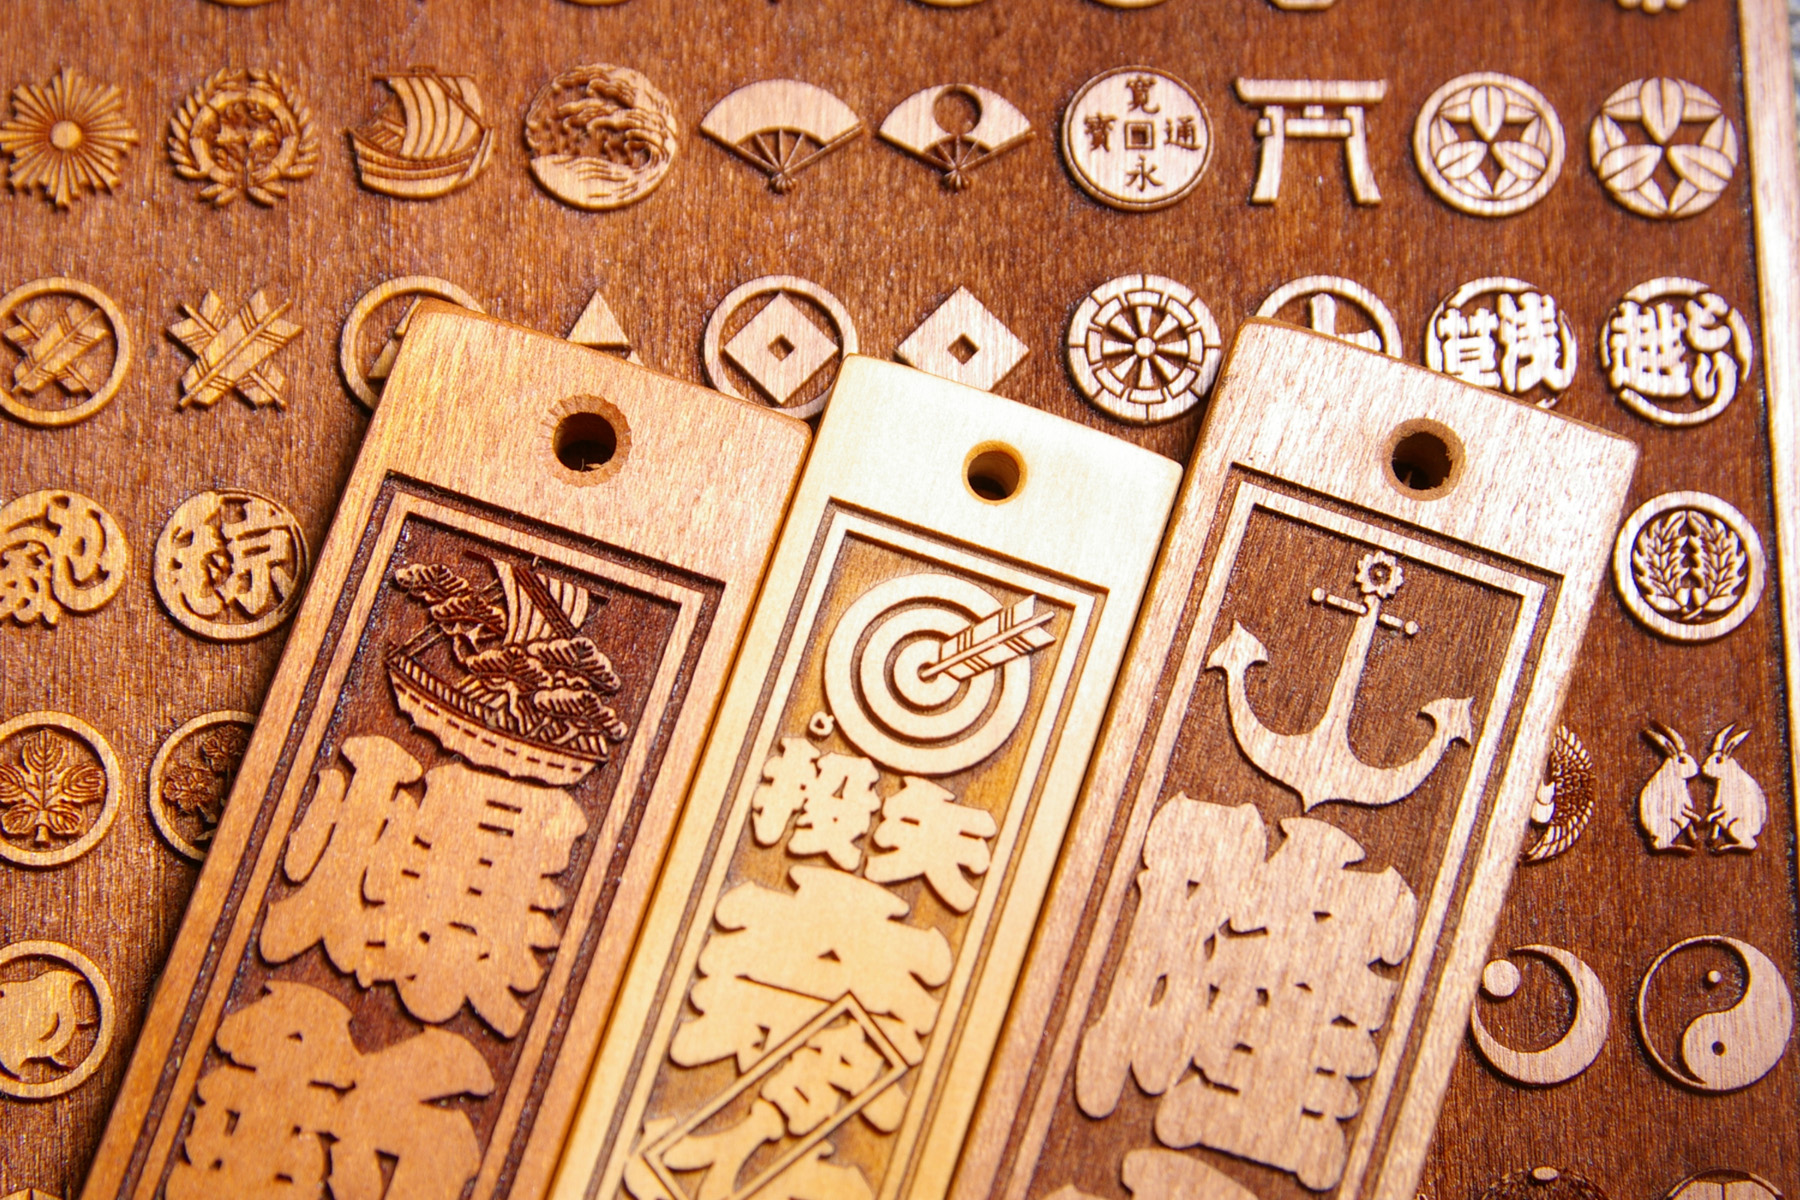 木札が表わす意味　デザイン的な家紋は、町人文化の発展による「粋」や「洒落」の象徴